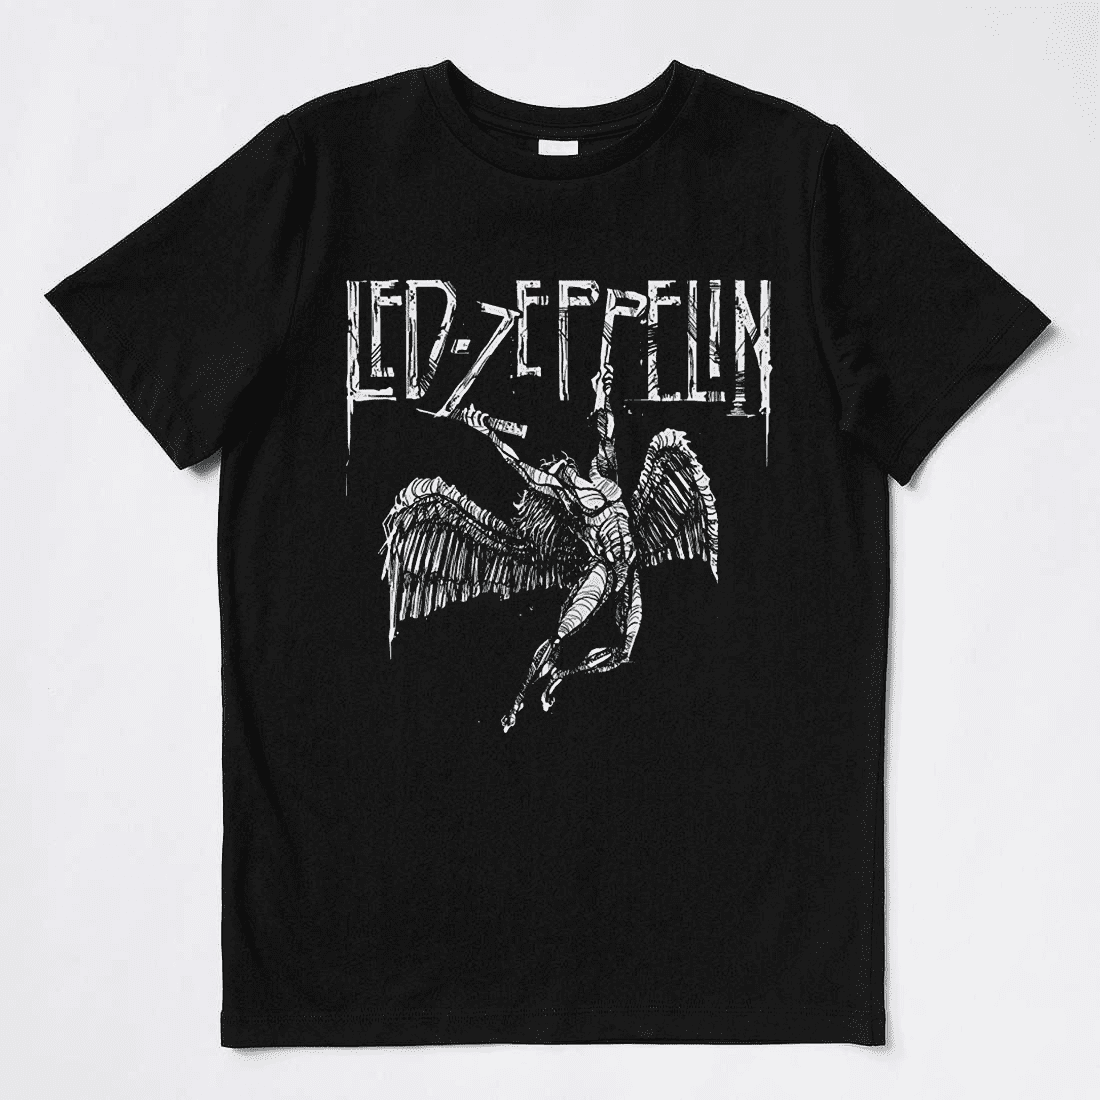 Led Zeppelin Vintage T-Shirt Band Rock Tour Concert Unisex Black Shirt ...